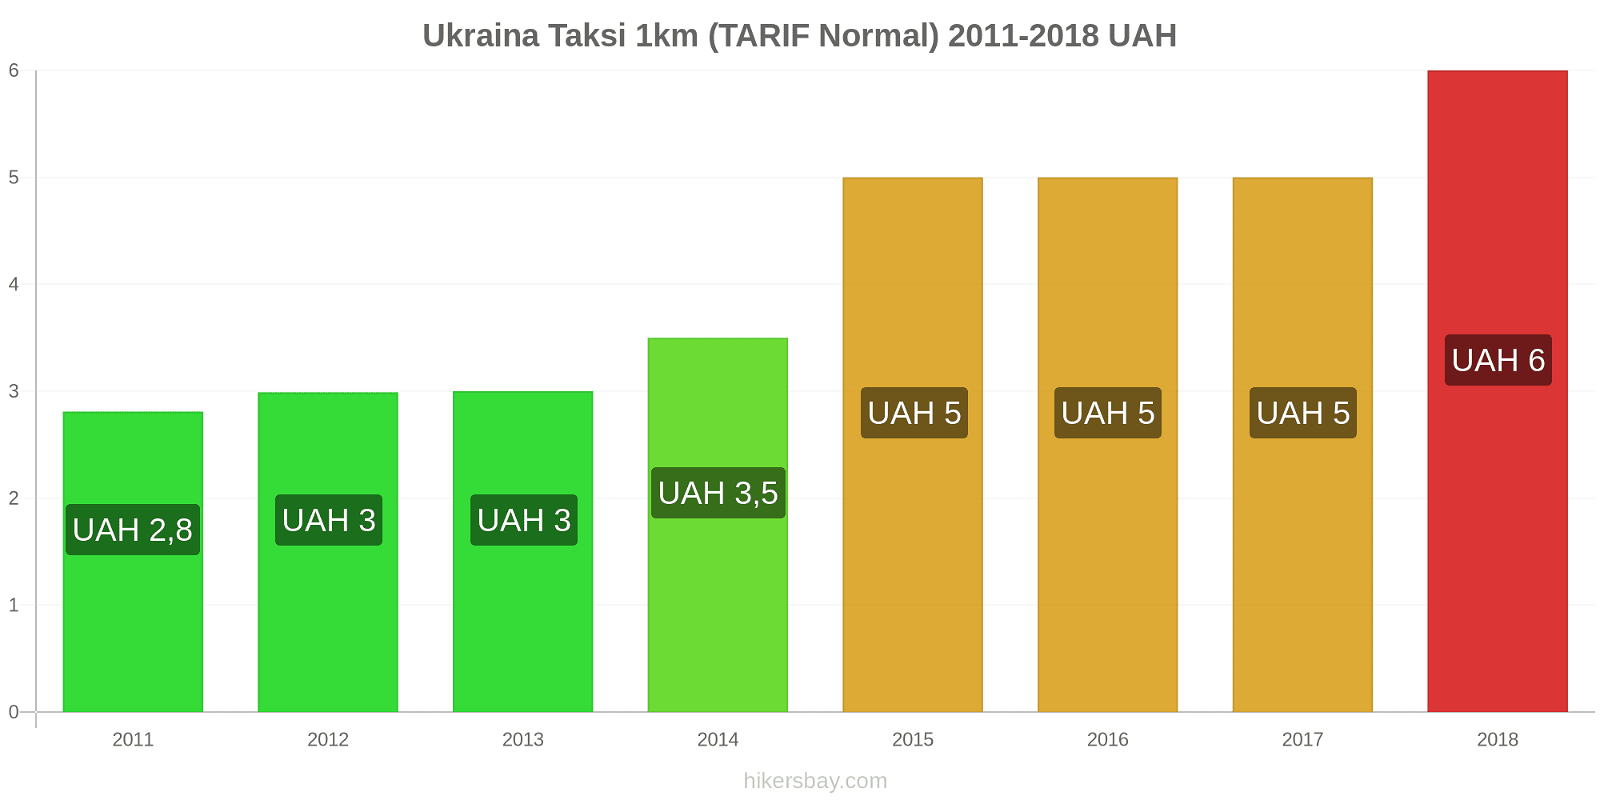 Ukraina perubahan harga Taksi 1km (Tarif Normal) hikersbay.com